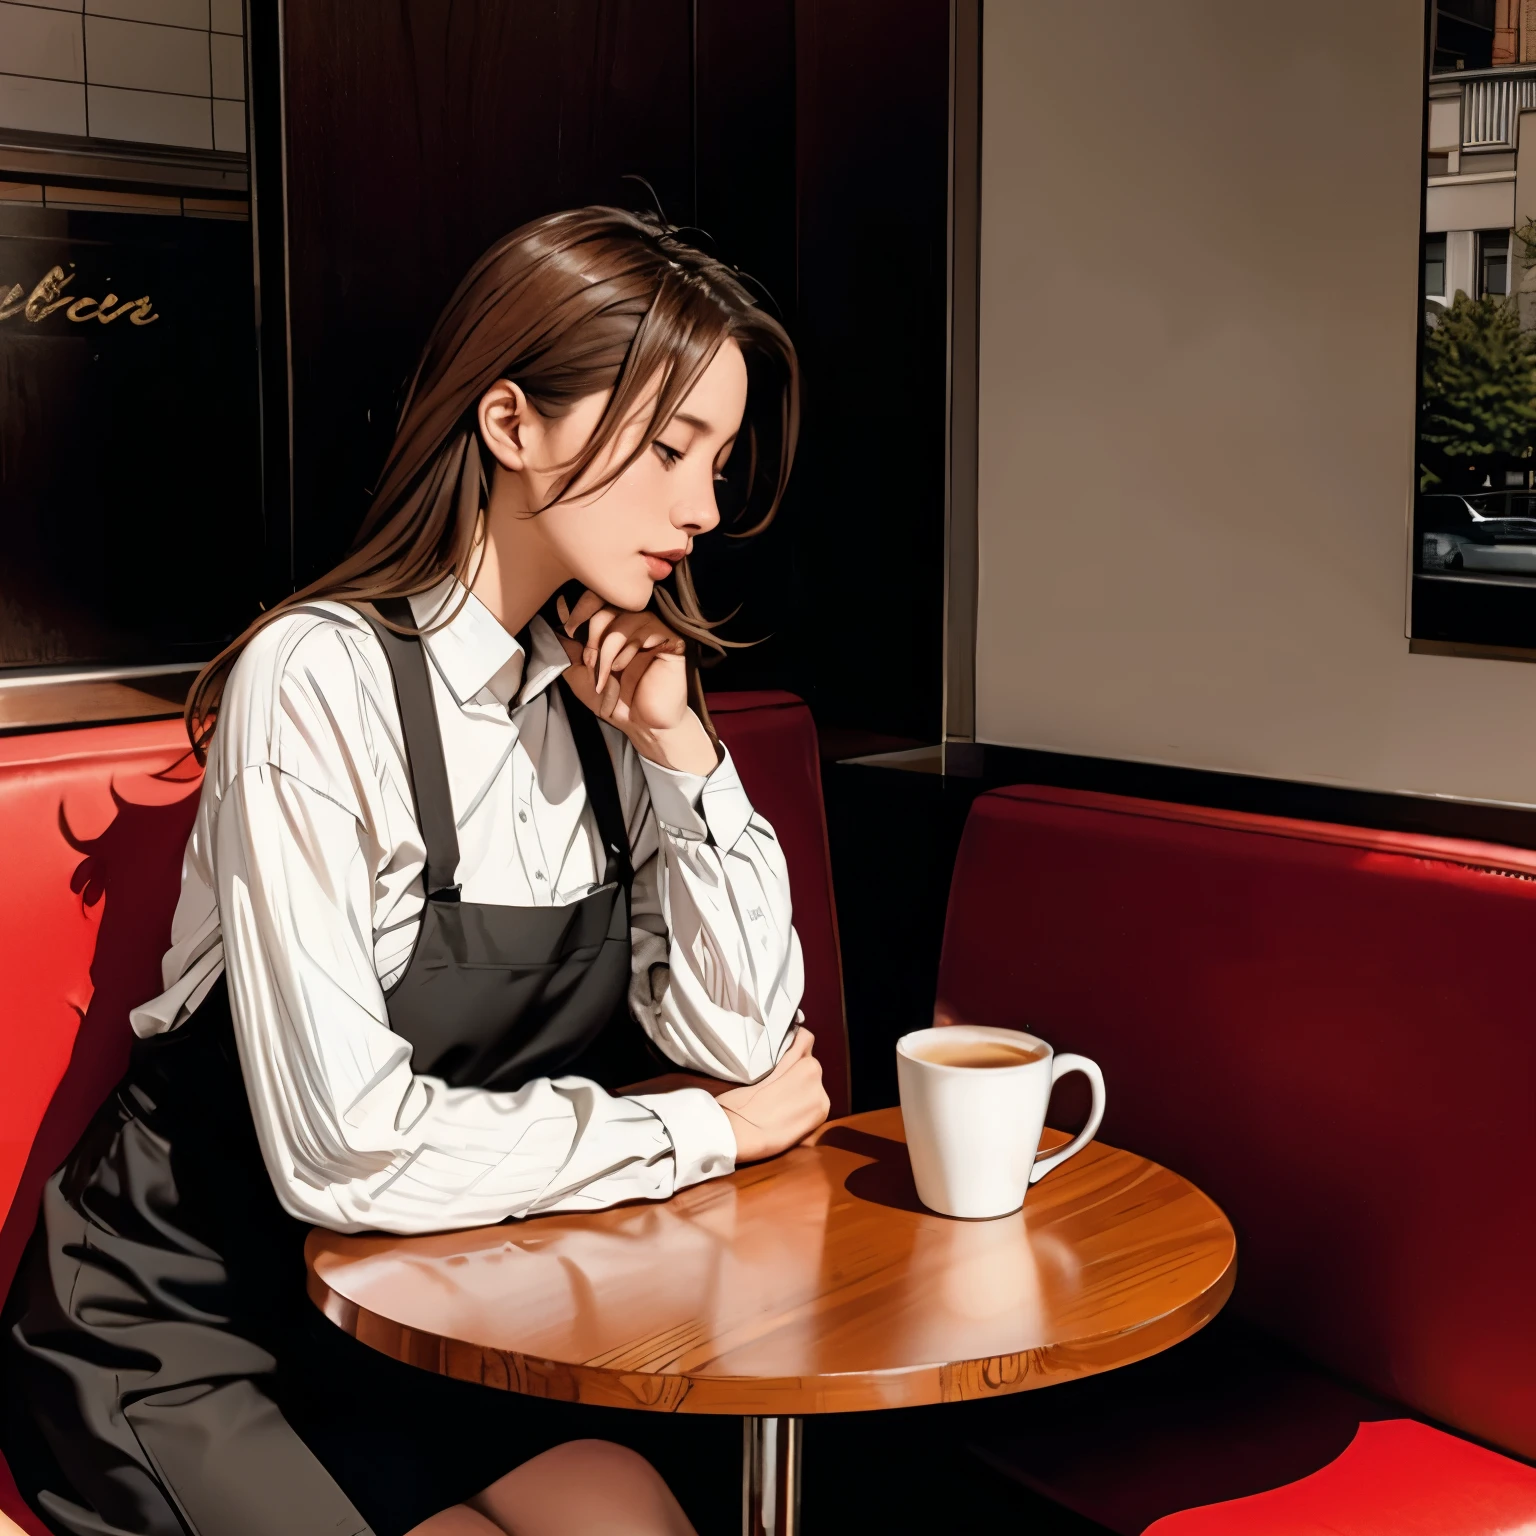 坐在咖啡桌边喝咖啡的德国女人、艾玛&#39;的照片。窗户阳光, 蓝头发, 动态姿势, 肌理, 皮肤苍白, 有光泽的皮肤, (苗条的, 小的:1.2), [:(面部重点对焦, 细致的脸部, 完美的眼睛, 查看器:1.2):0.2], 实际的, 胶片颗粒, 最好的质量, 杰作